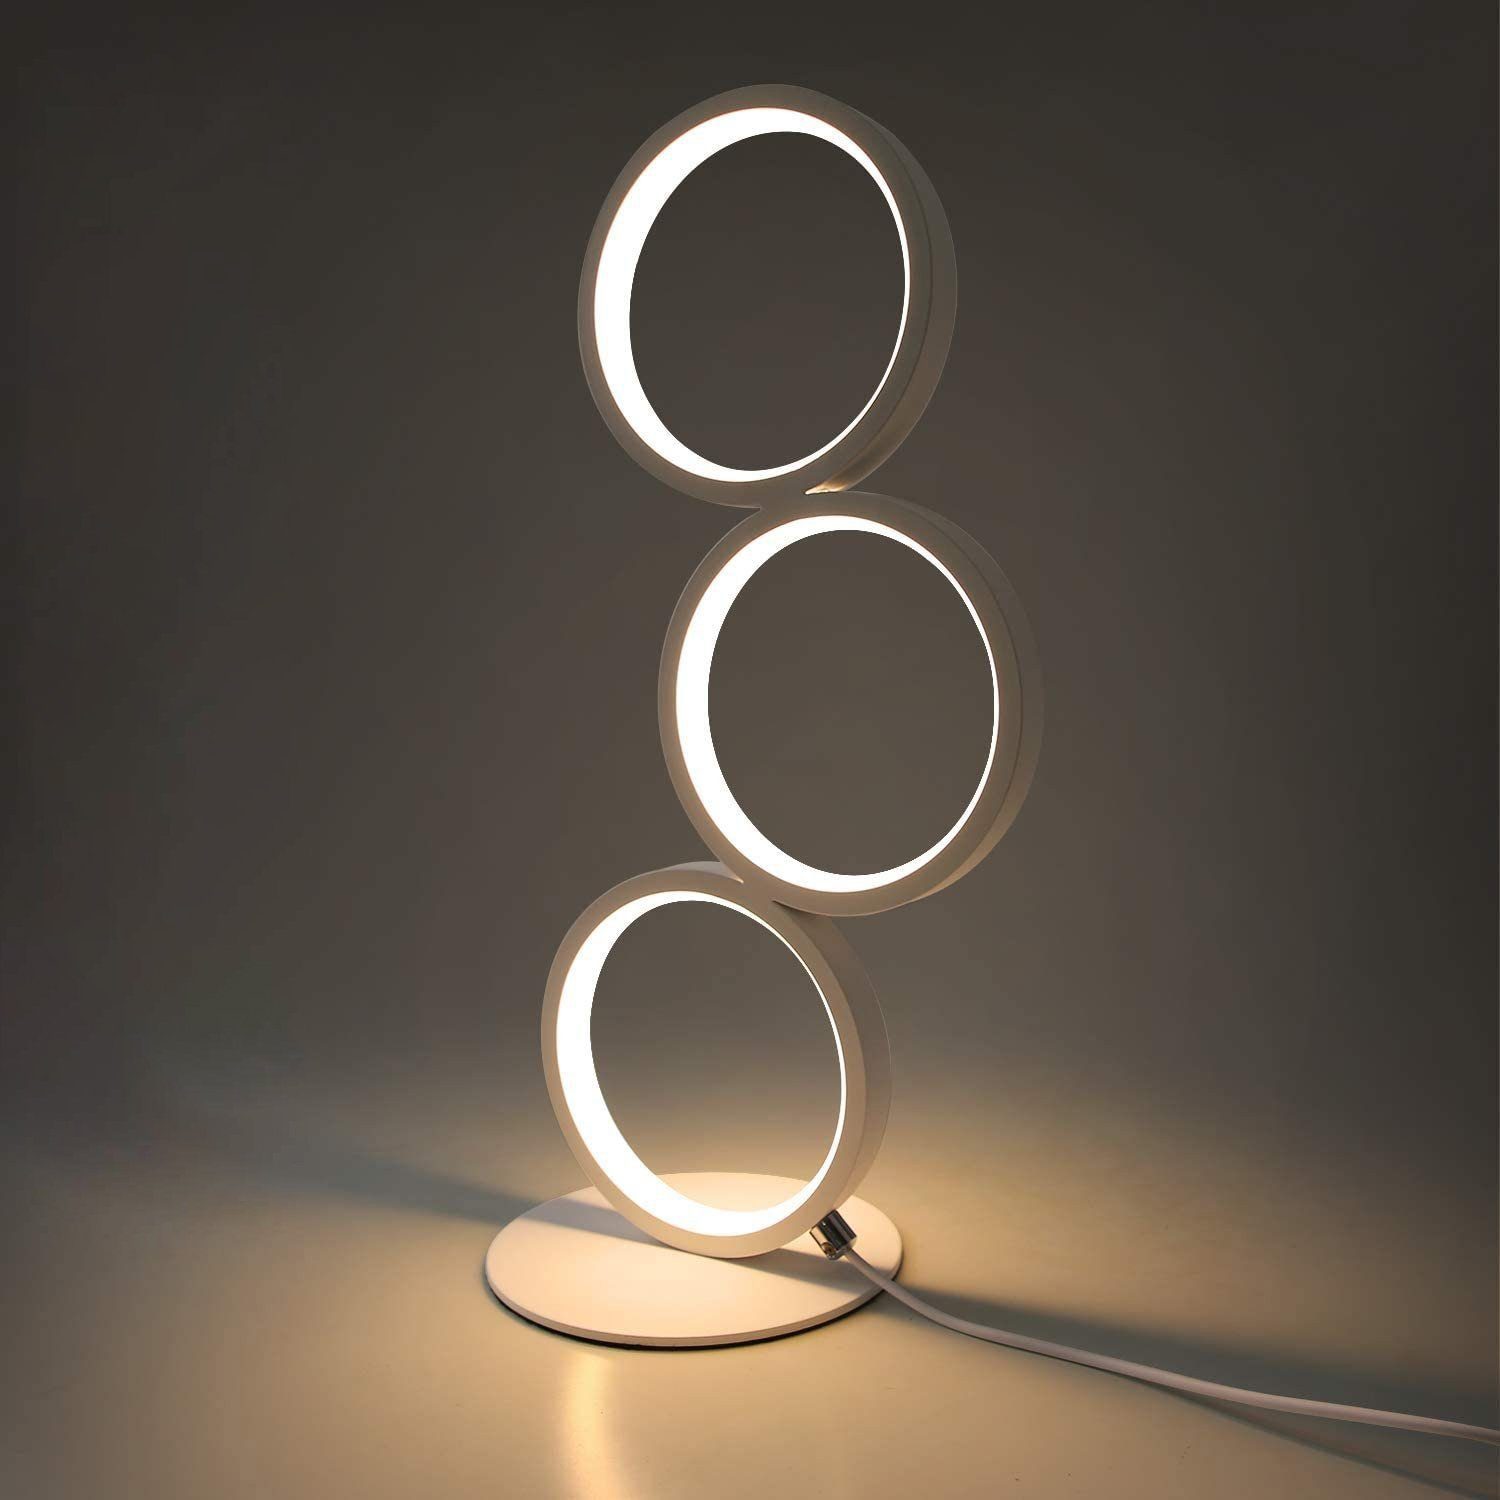 LED Tischlampe Touch Dimmbar Modern Nachtischlampe Schreibtischlampe Warmweiß 